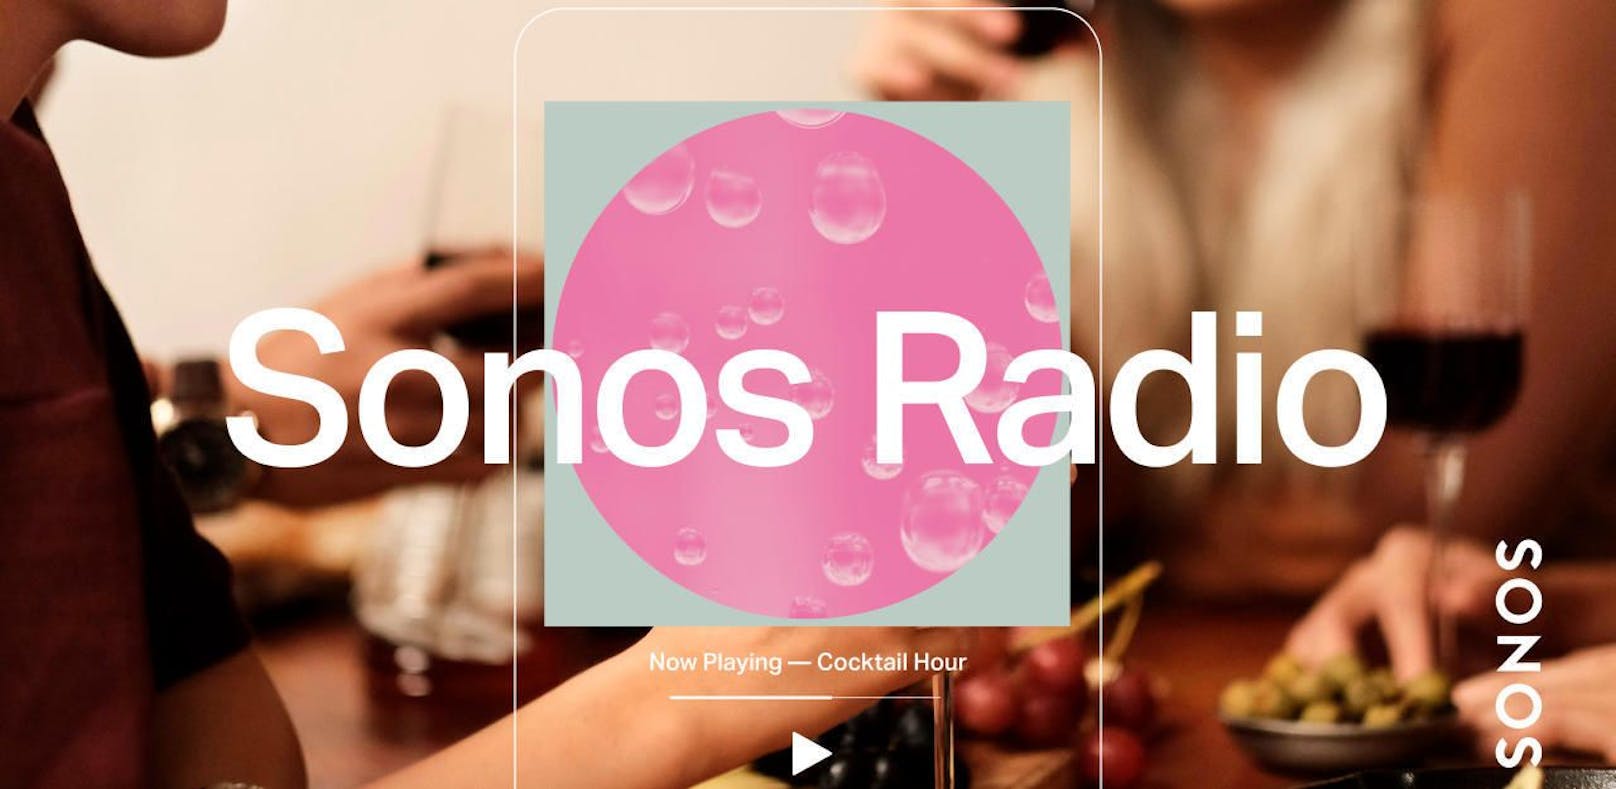 Sonos startet mit neuem Streaming "Sonos Radio"